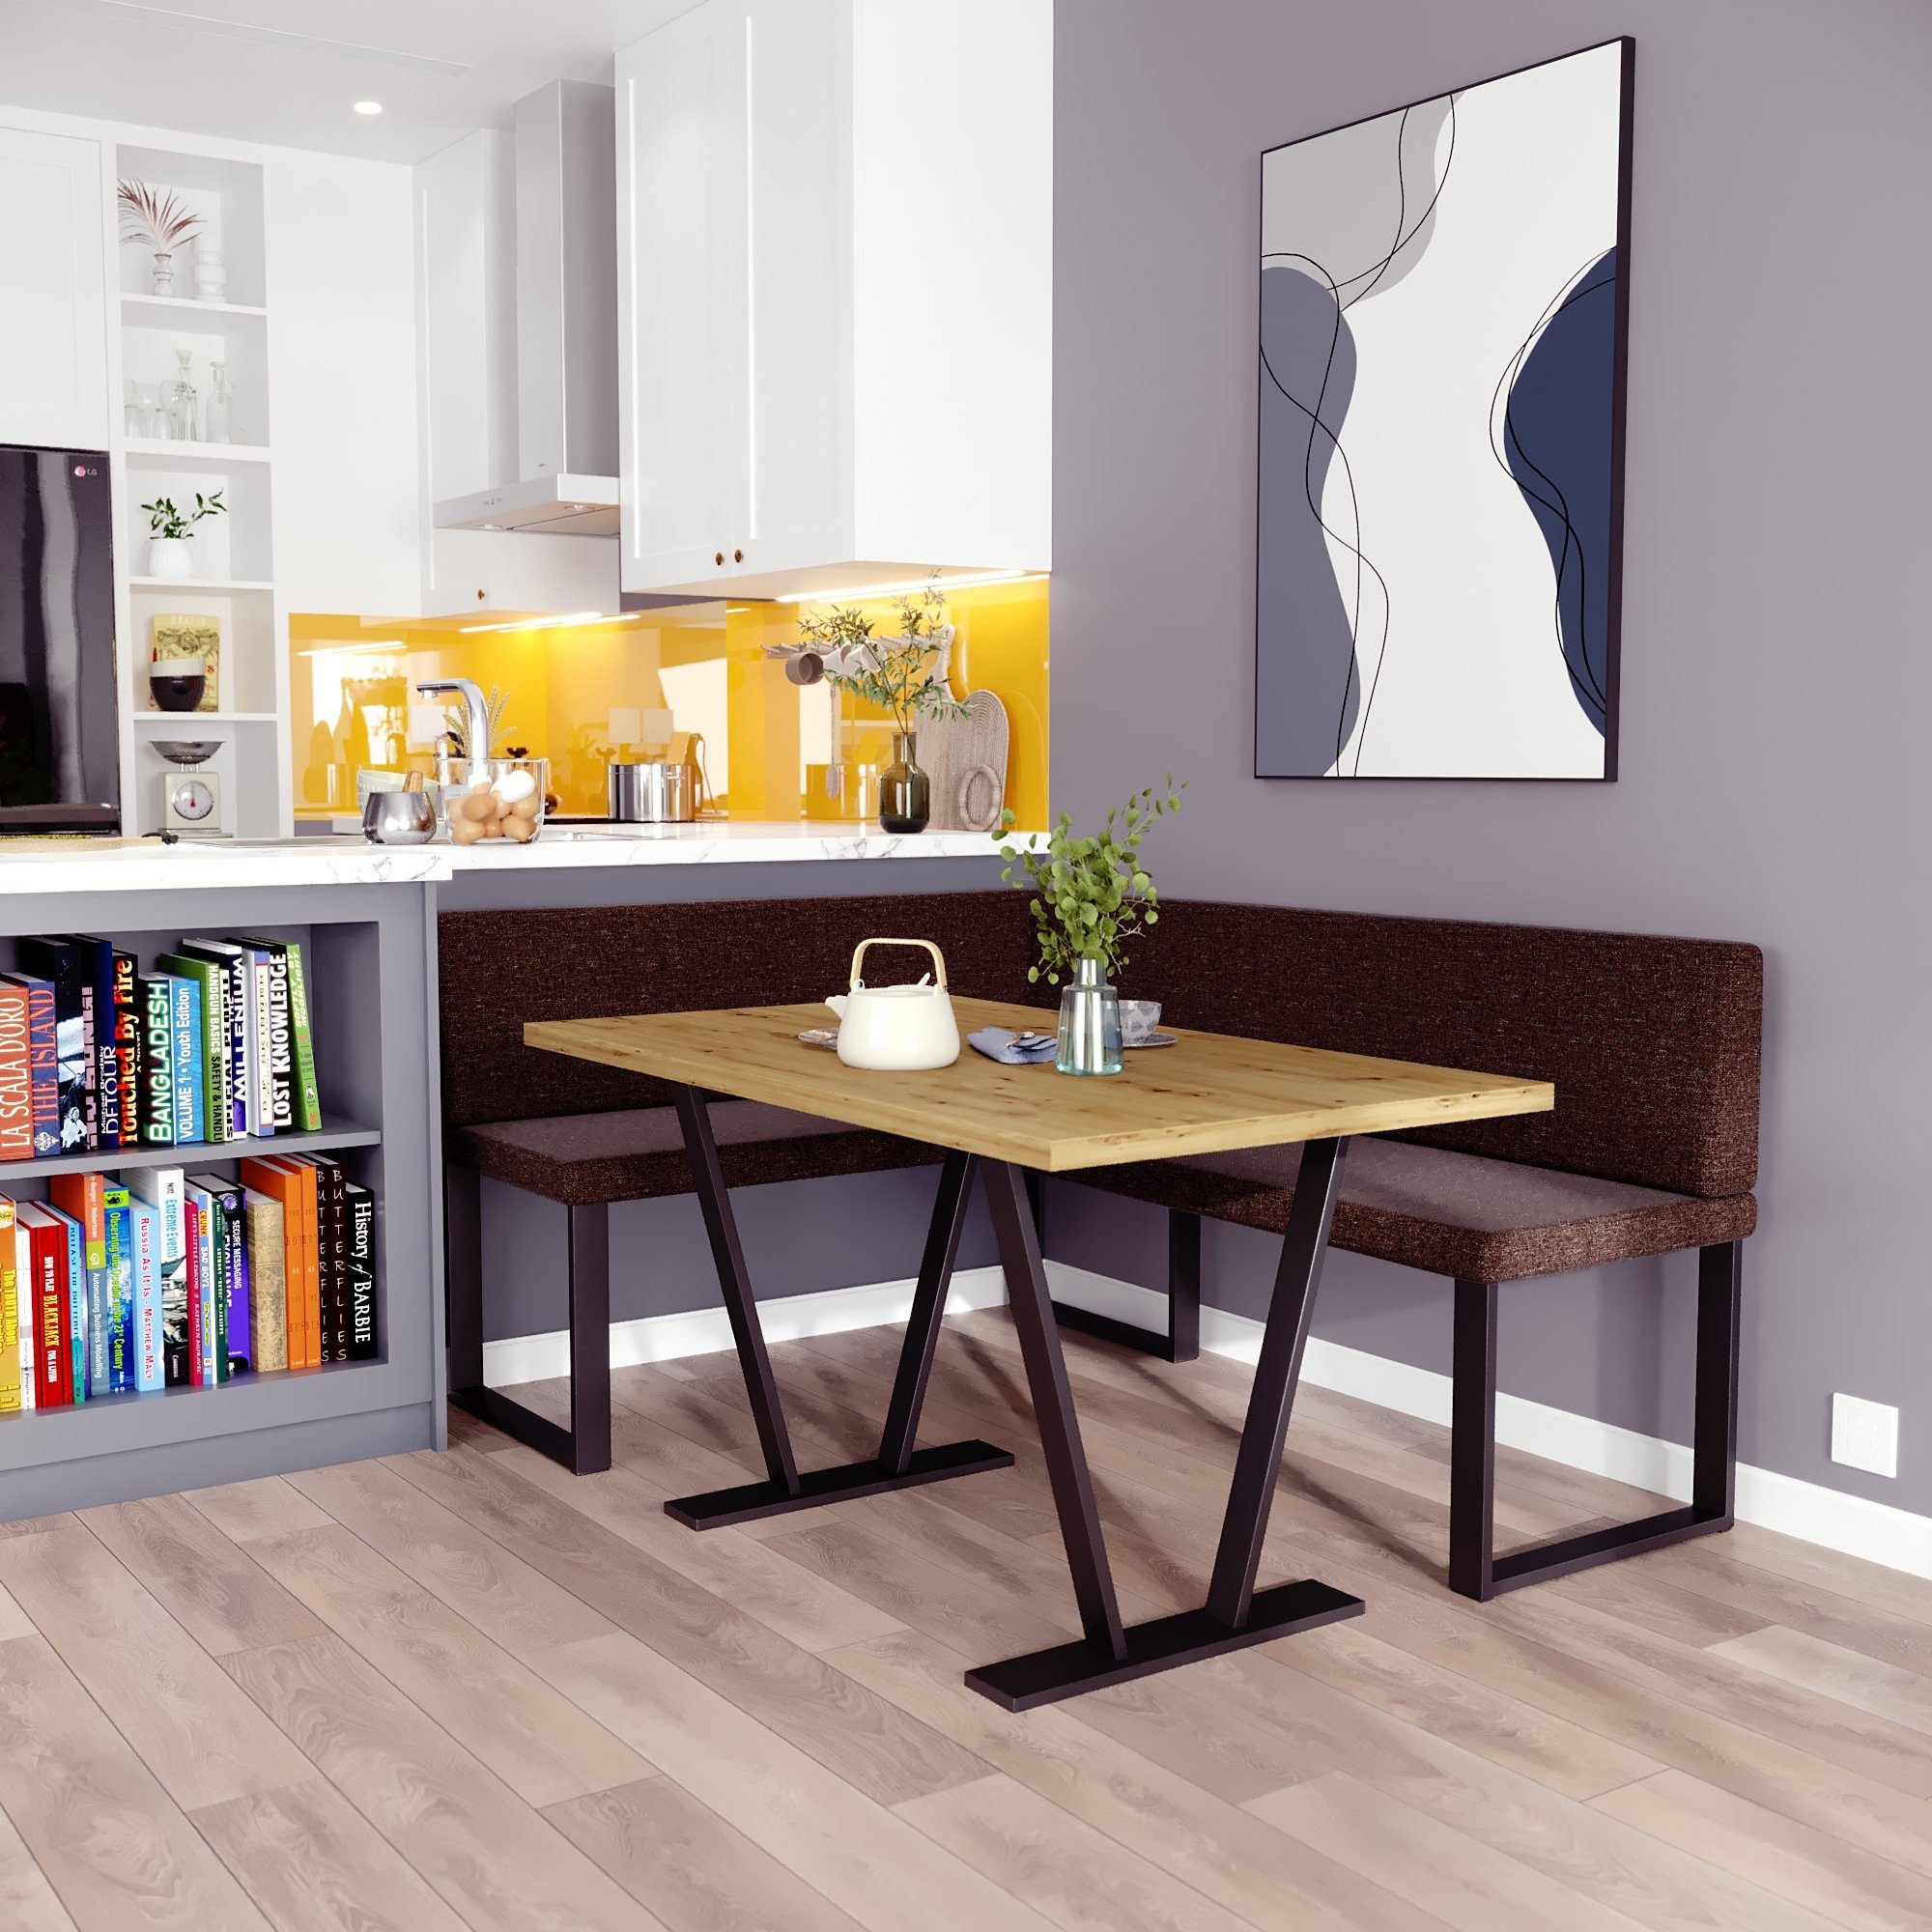 sofa4you Eckbankgruppe Alina Metall mit Tisch, Moderne Sitzecke perfekt für Ihr Esszimmer, Küche (128x168/142x196) braun